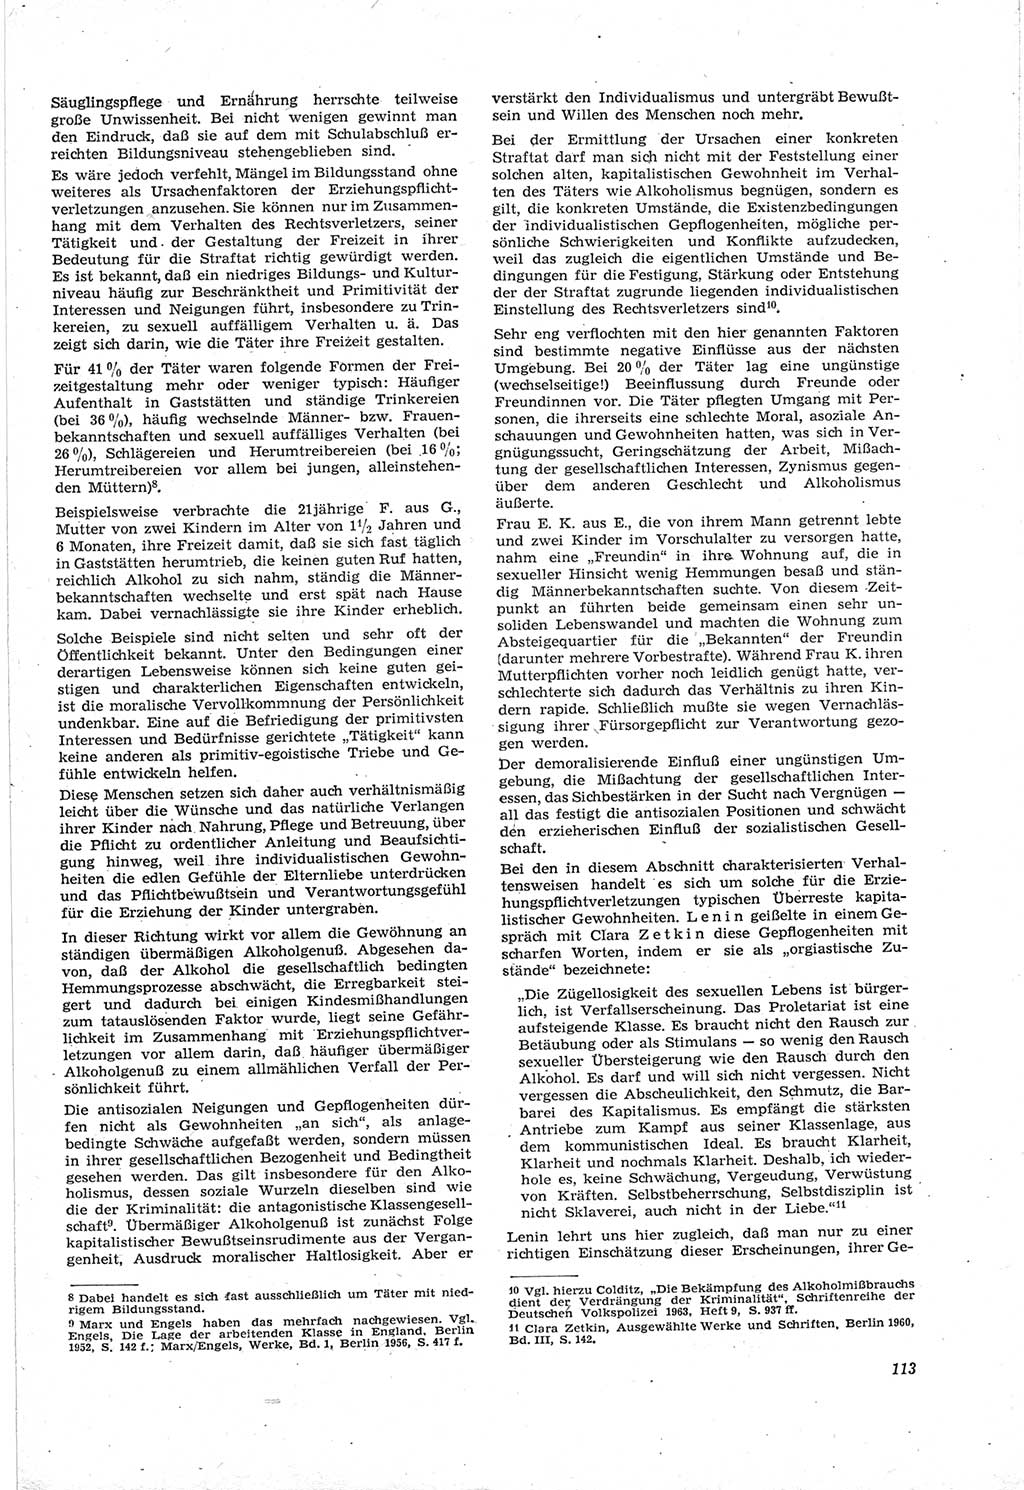 Neue Justiz (NJ), Zeitschrift für Recht und Rechtswissenschaft [Deutsche Demokratische Republik (DDR)], 18. Jahrgang 1964, Seite 113 (NJ DDR 1964, S. 113)